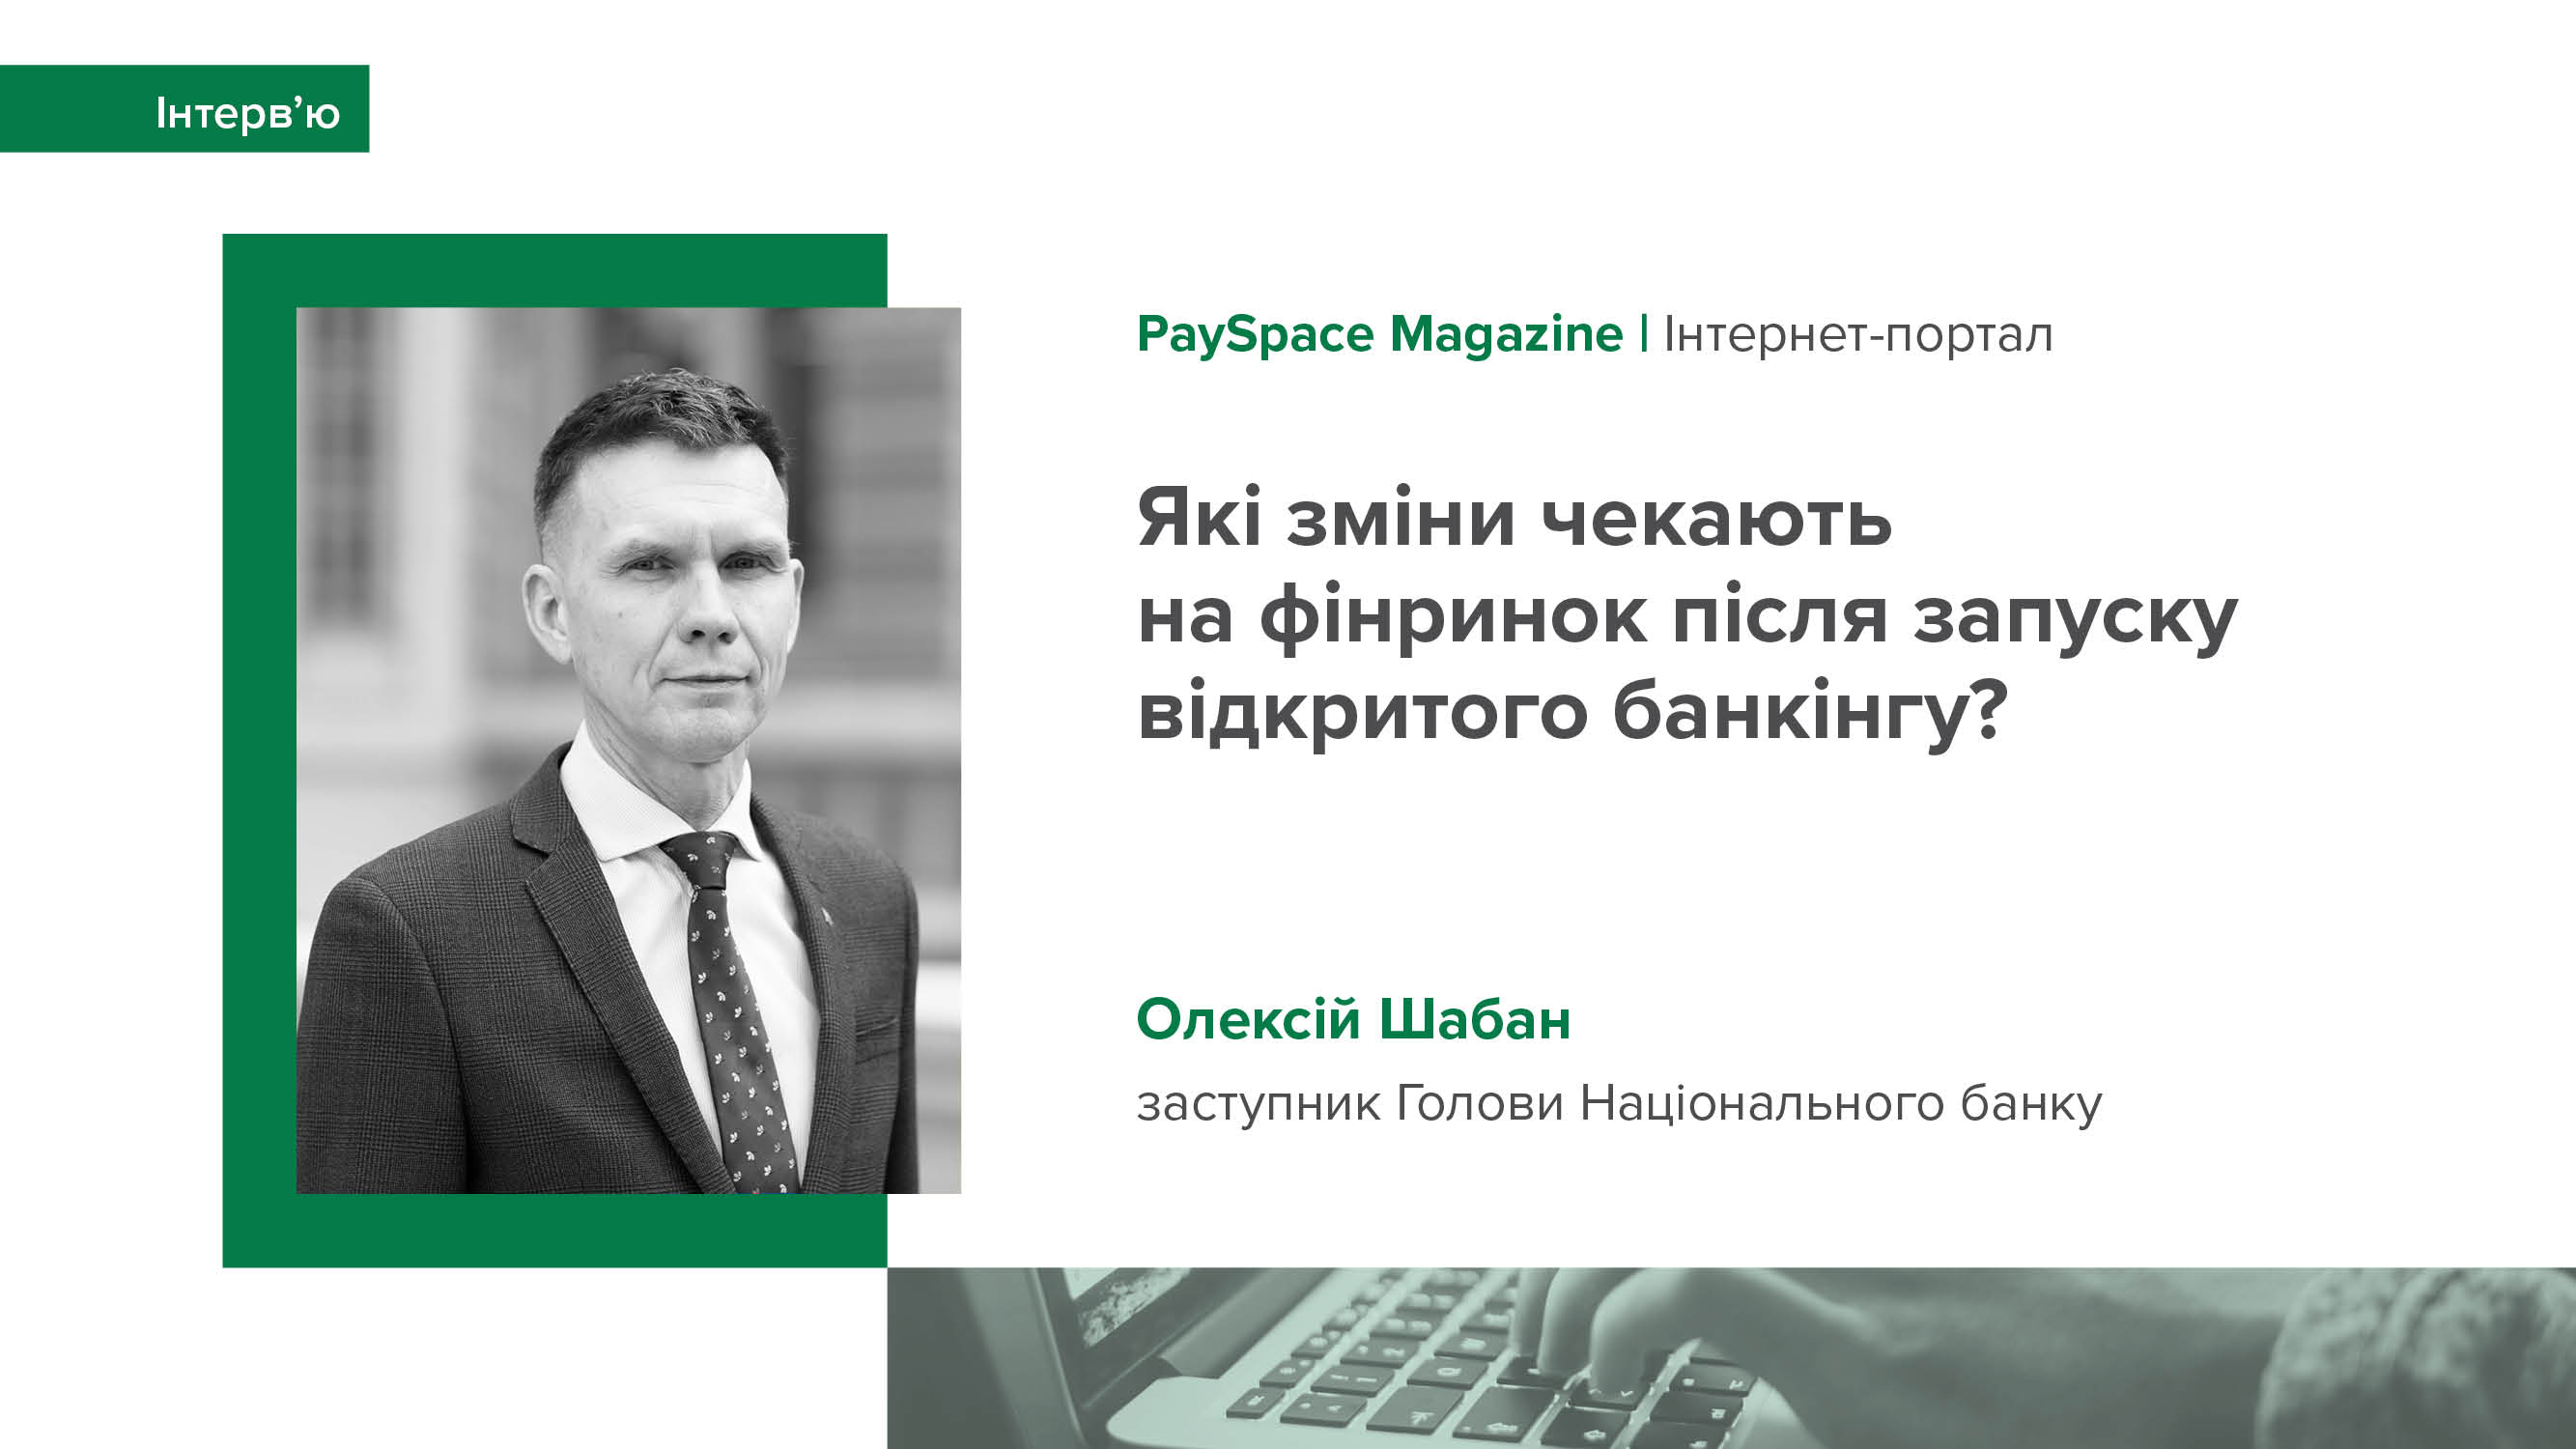 Інтерв’ю заступника Голови НБУ Олексія Шабана для видання PaySpace Magazine про відкритий банкінг